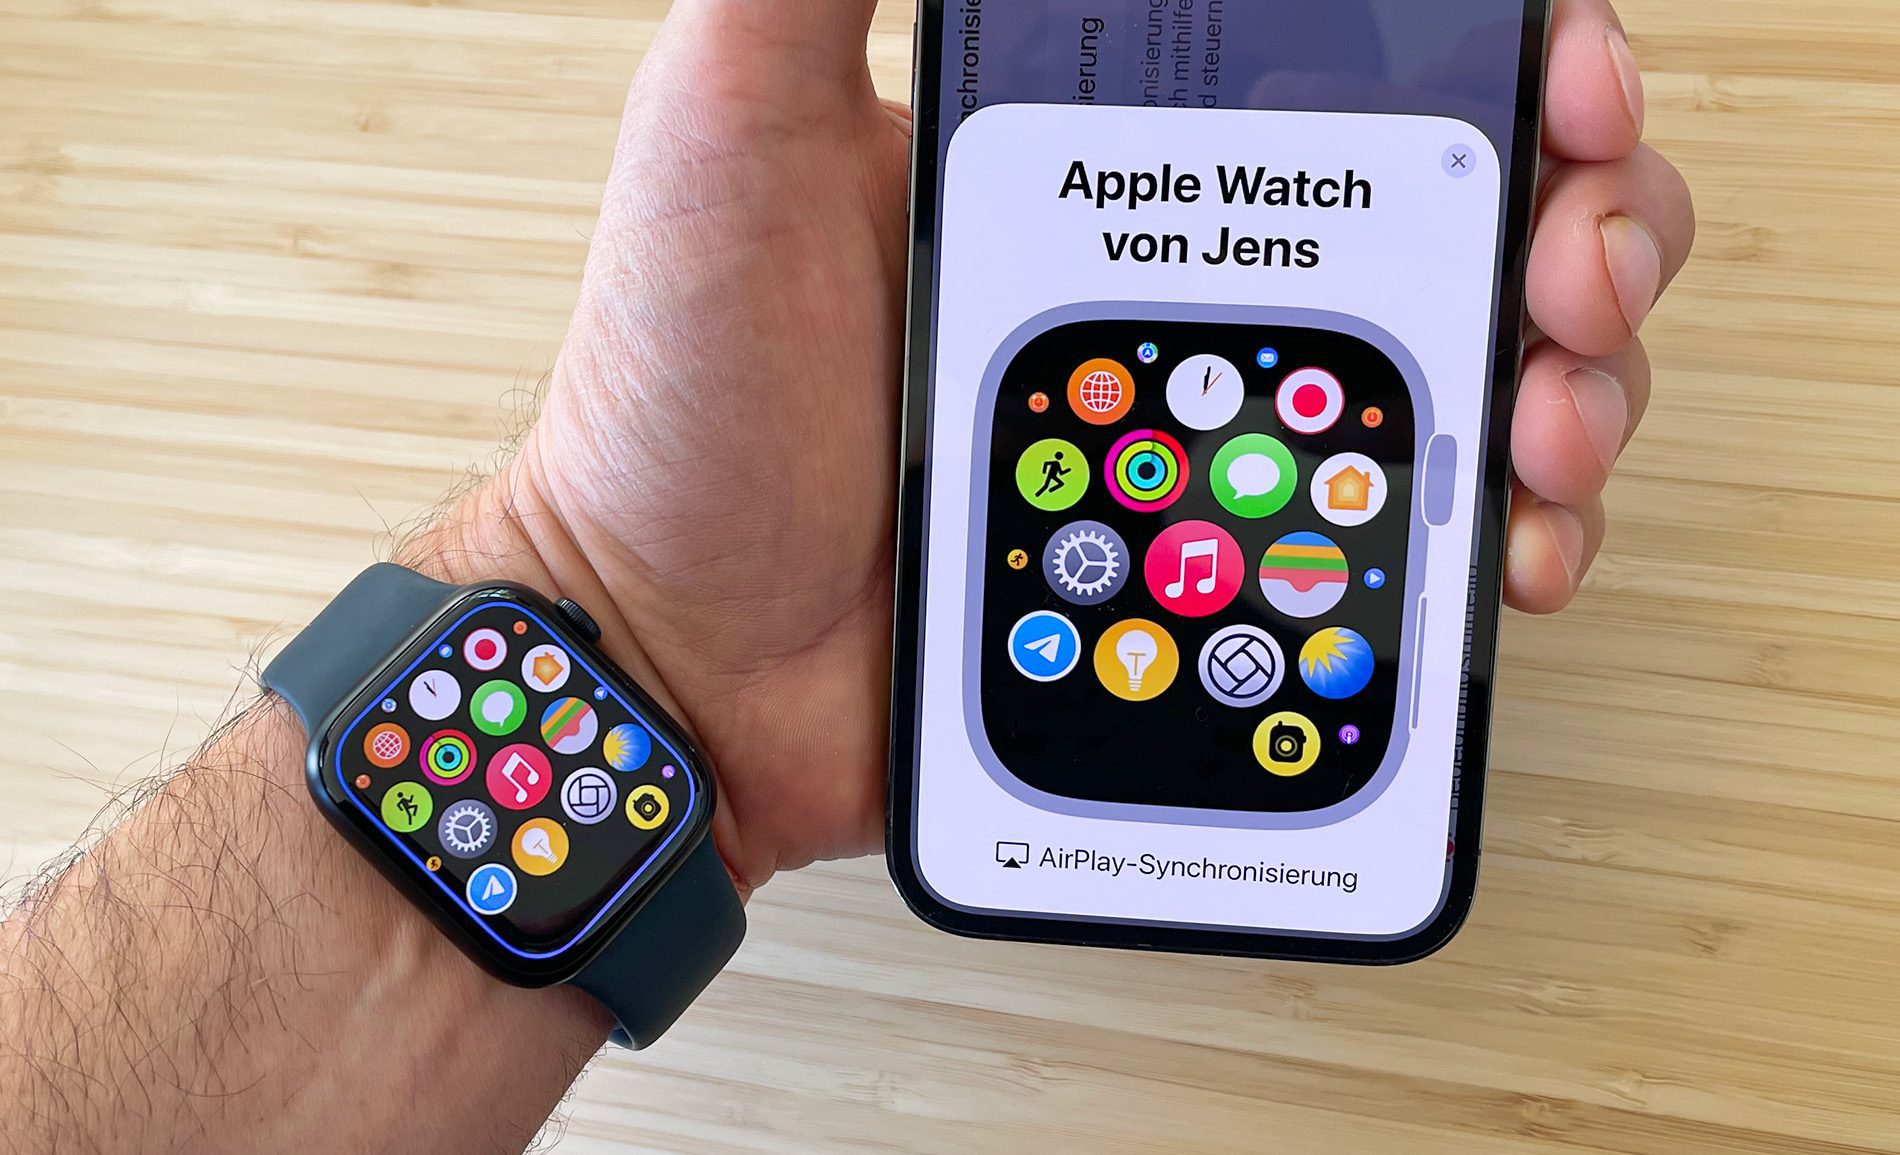 Über das Bilder der Apple Watch am iPhone kann man alle Funktionen der Apple Watch per Fernsteuerung bedienen.